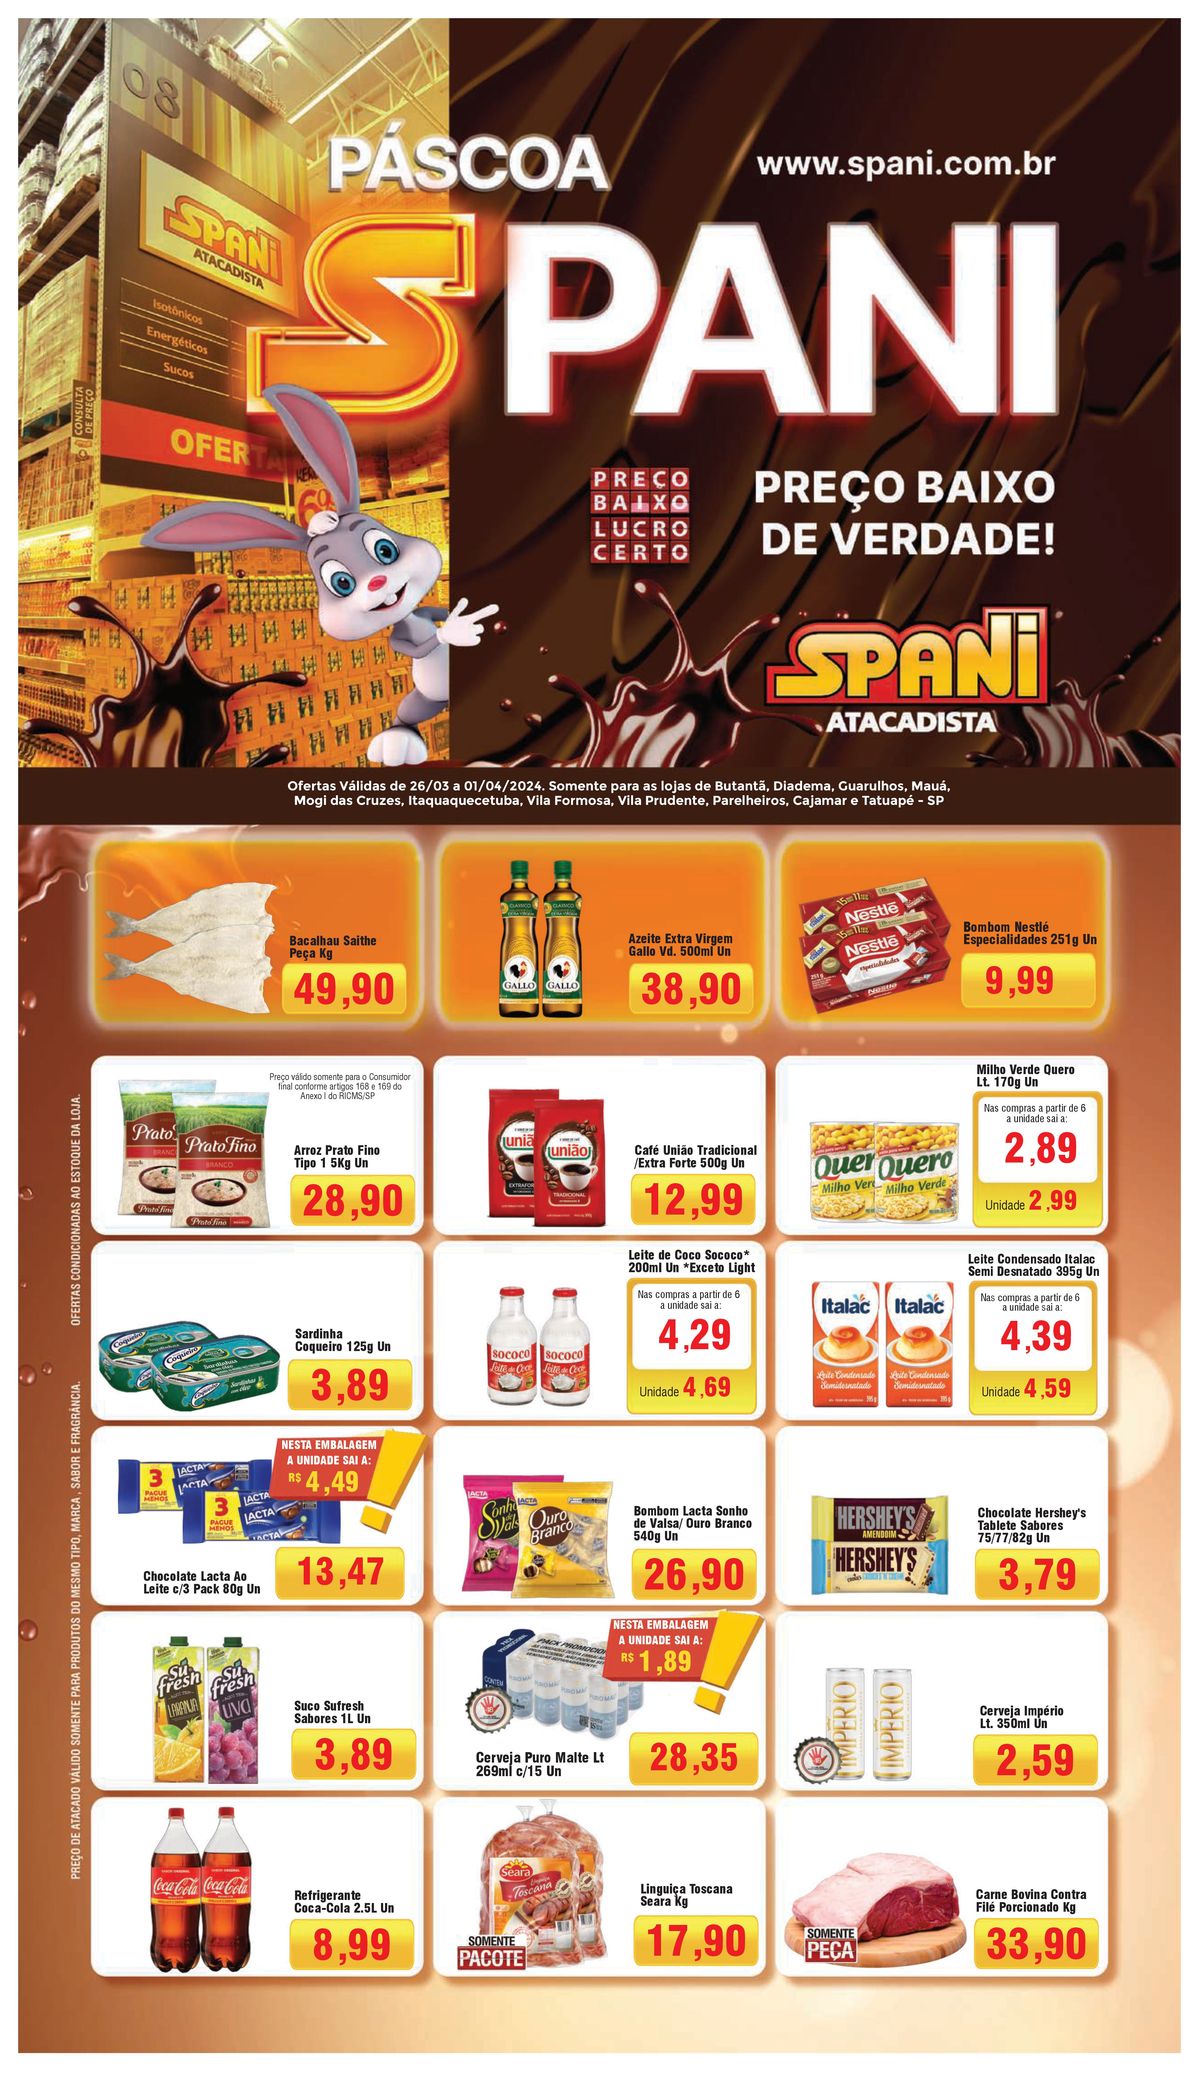 Ofertas em supermercado Spani Atacadista: alimentos e bebidas em promoção